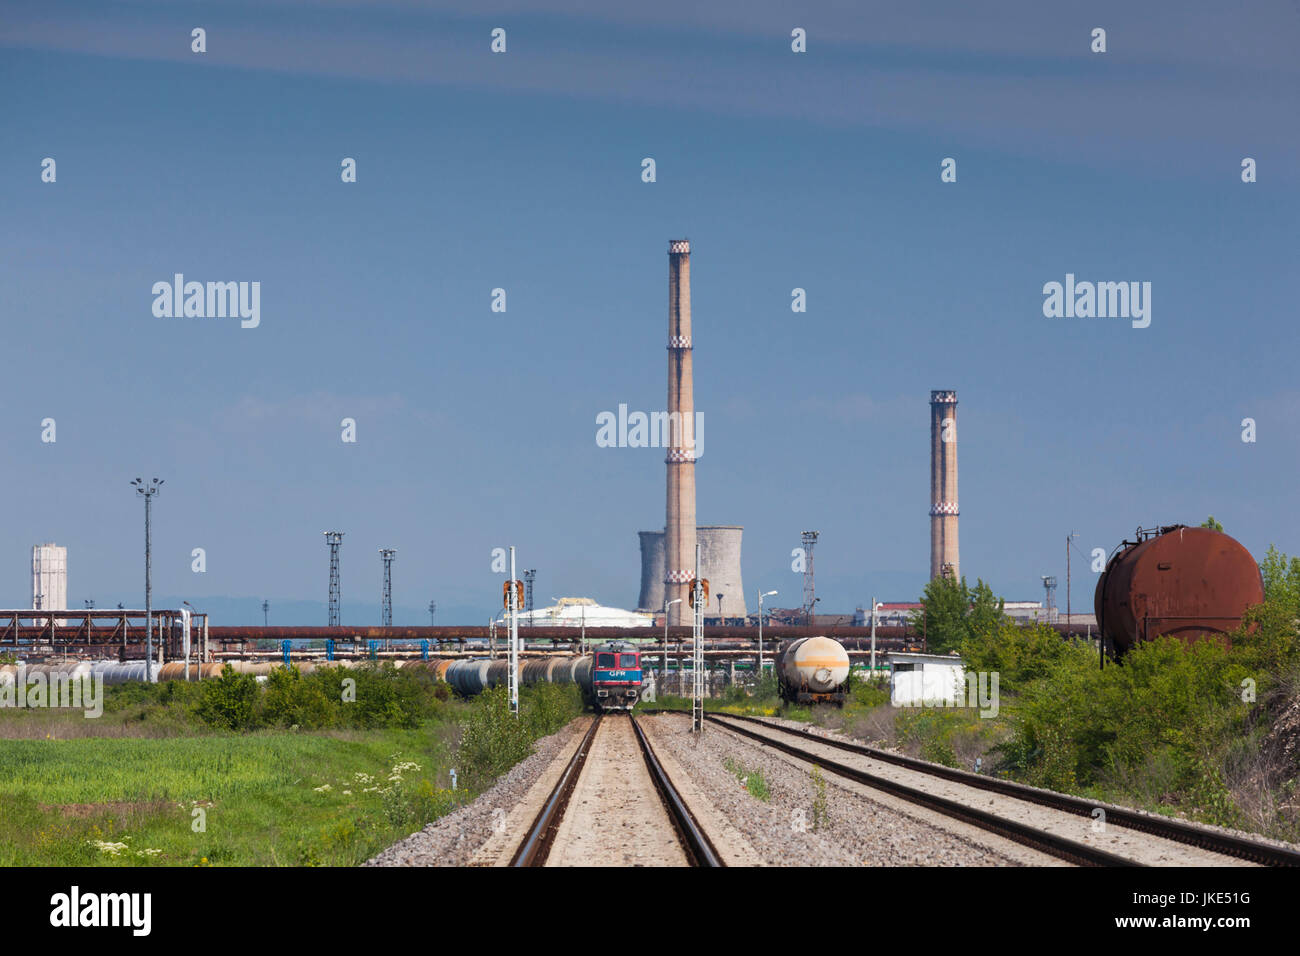 Romania, Wallachia, Ploiesti, view of oil refineries Stock Photo